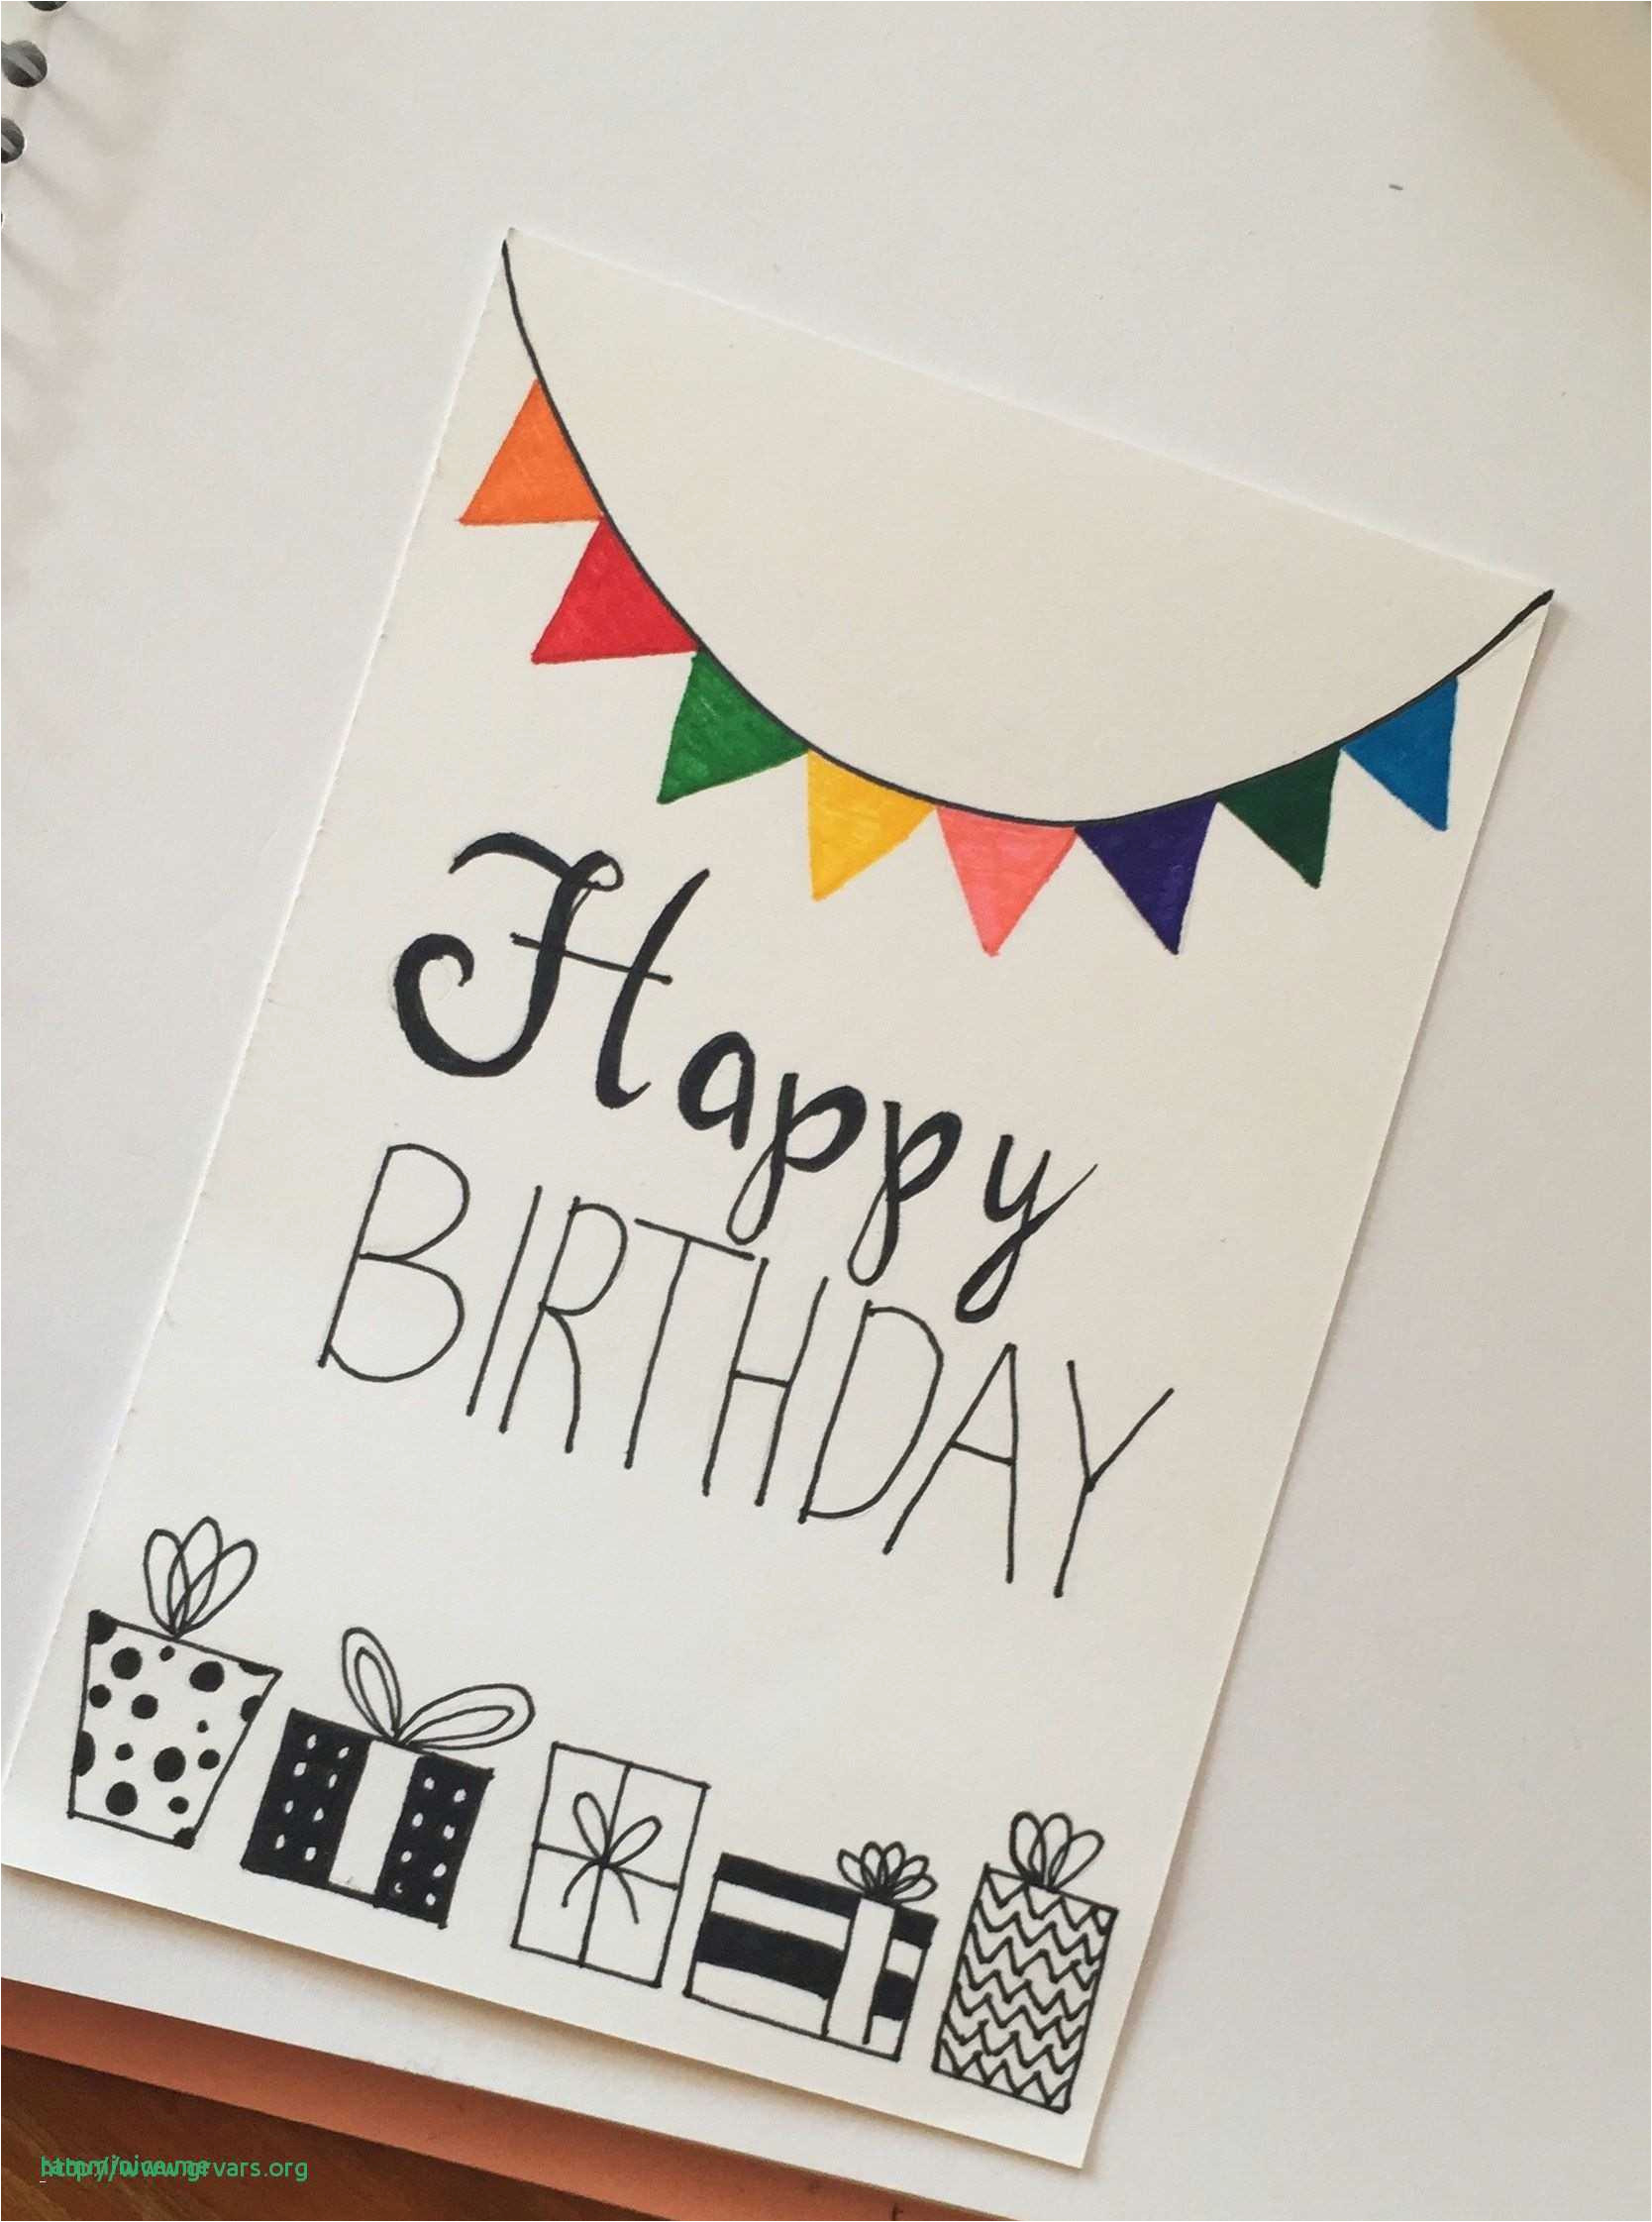 Cricut Birthday Card Ideas Diy Birthday Cards Cricut Simple Handmade Birthday Cards Awesome